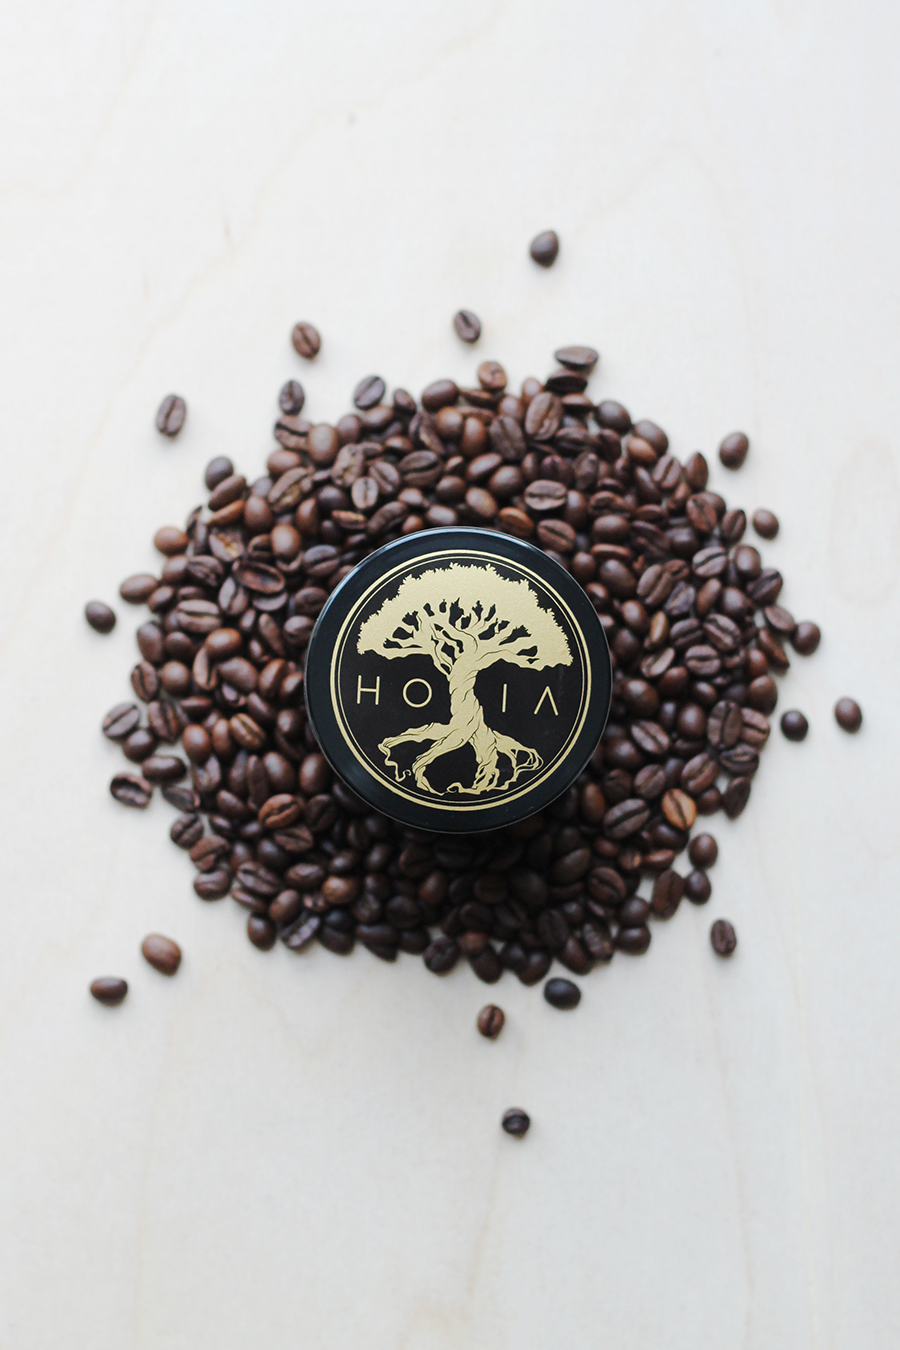 HOIA kohvimündi kehakoorija aitab võidelda tselluliidiga, jahutab, parandab vereringet, eemaldab surnud naharakud ja muudab naha siidiselt siledaks.